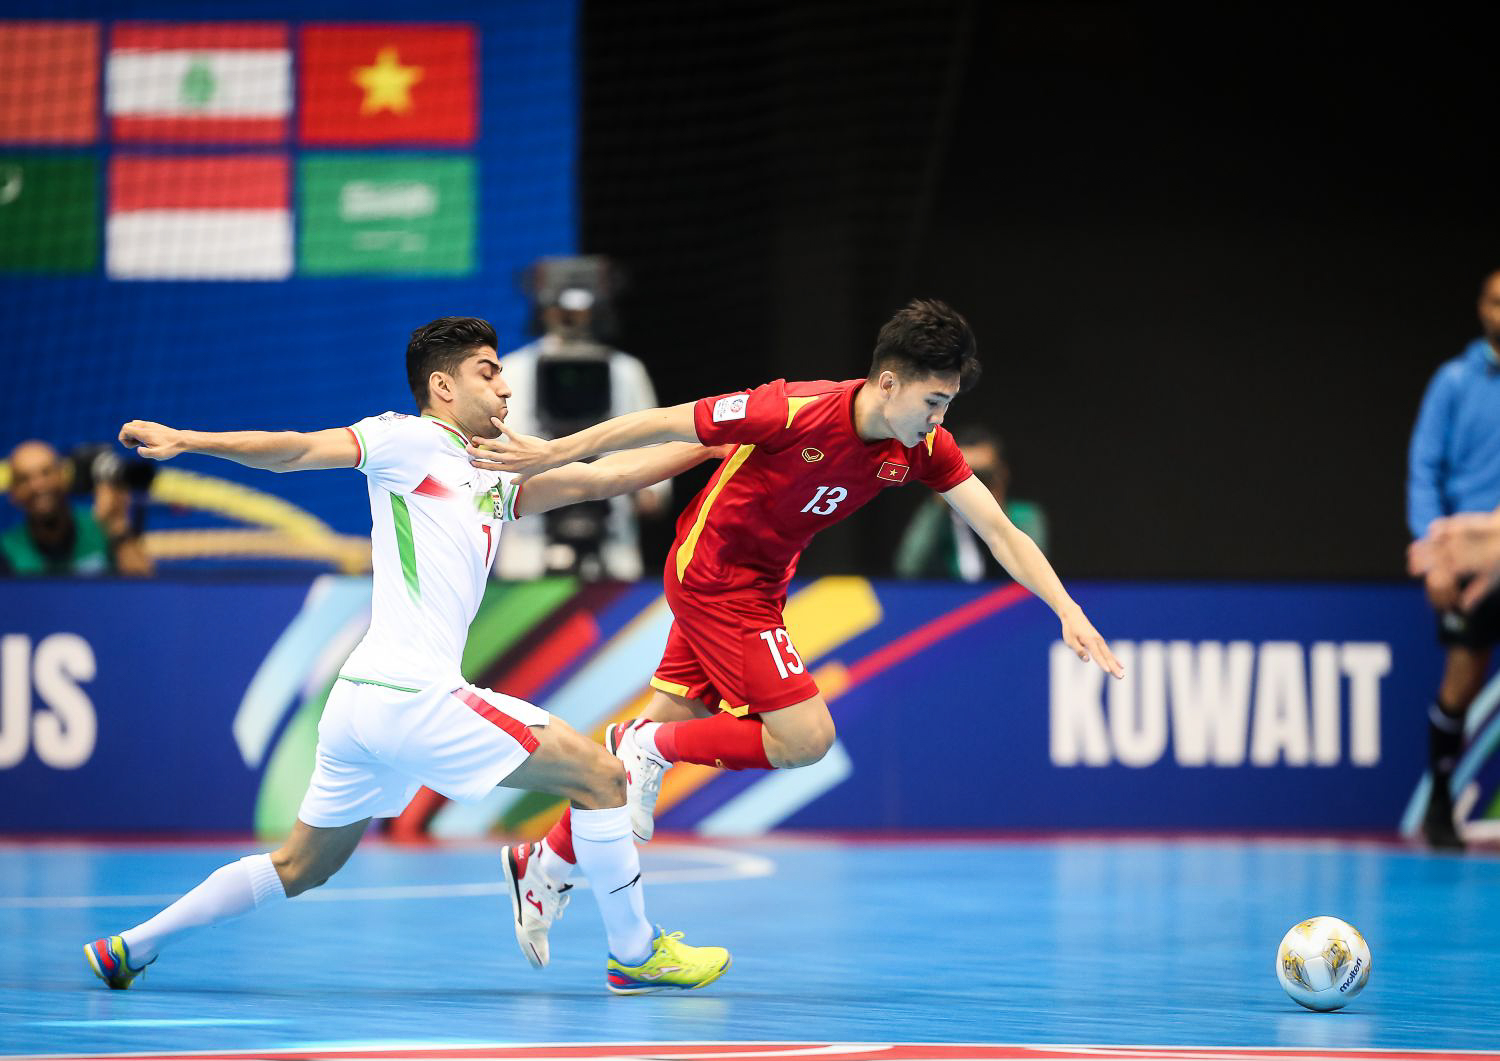 Báo Iran hết lời khen ngợi 1 ngôi sao của ĐT futsal Việt Nam - Ảnh 1.